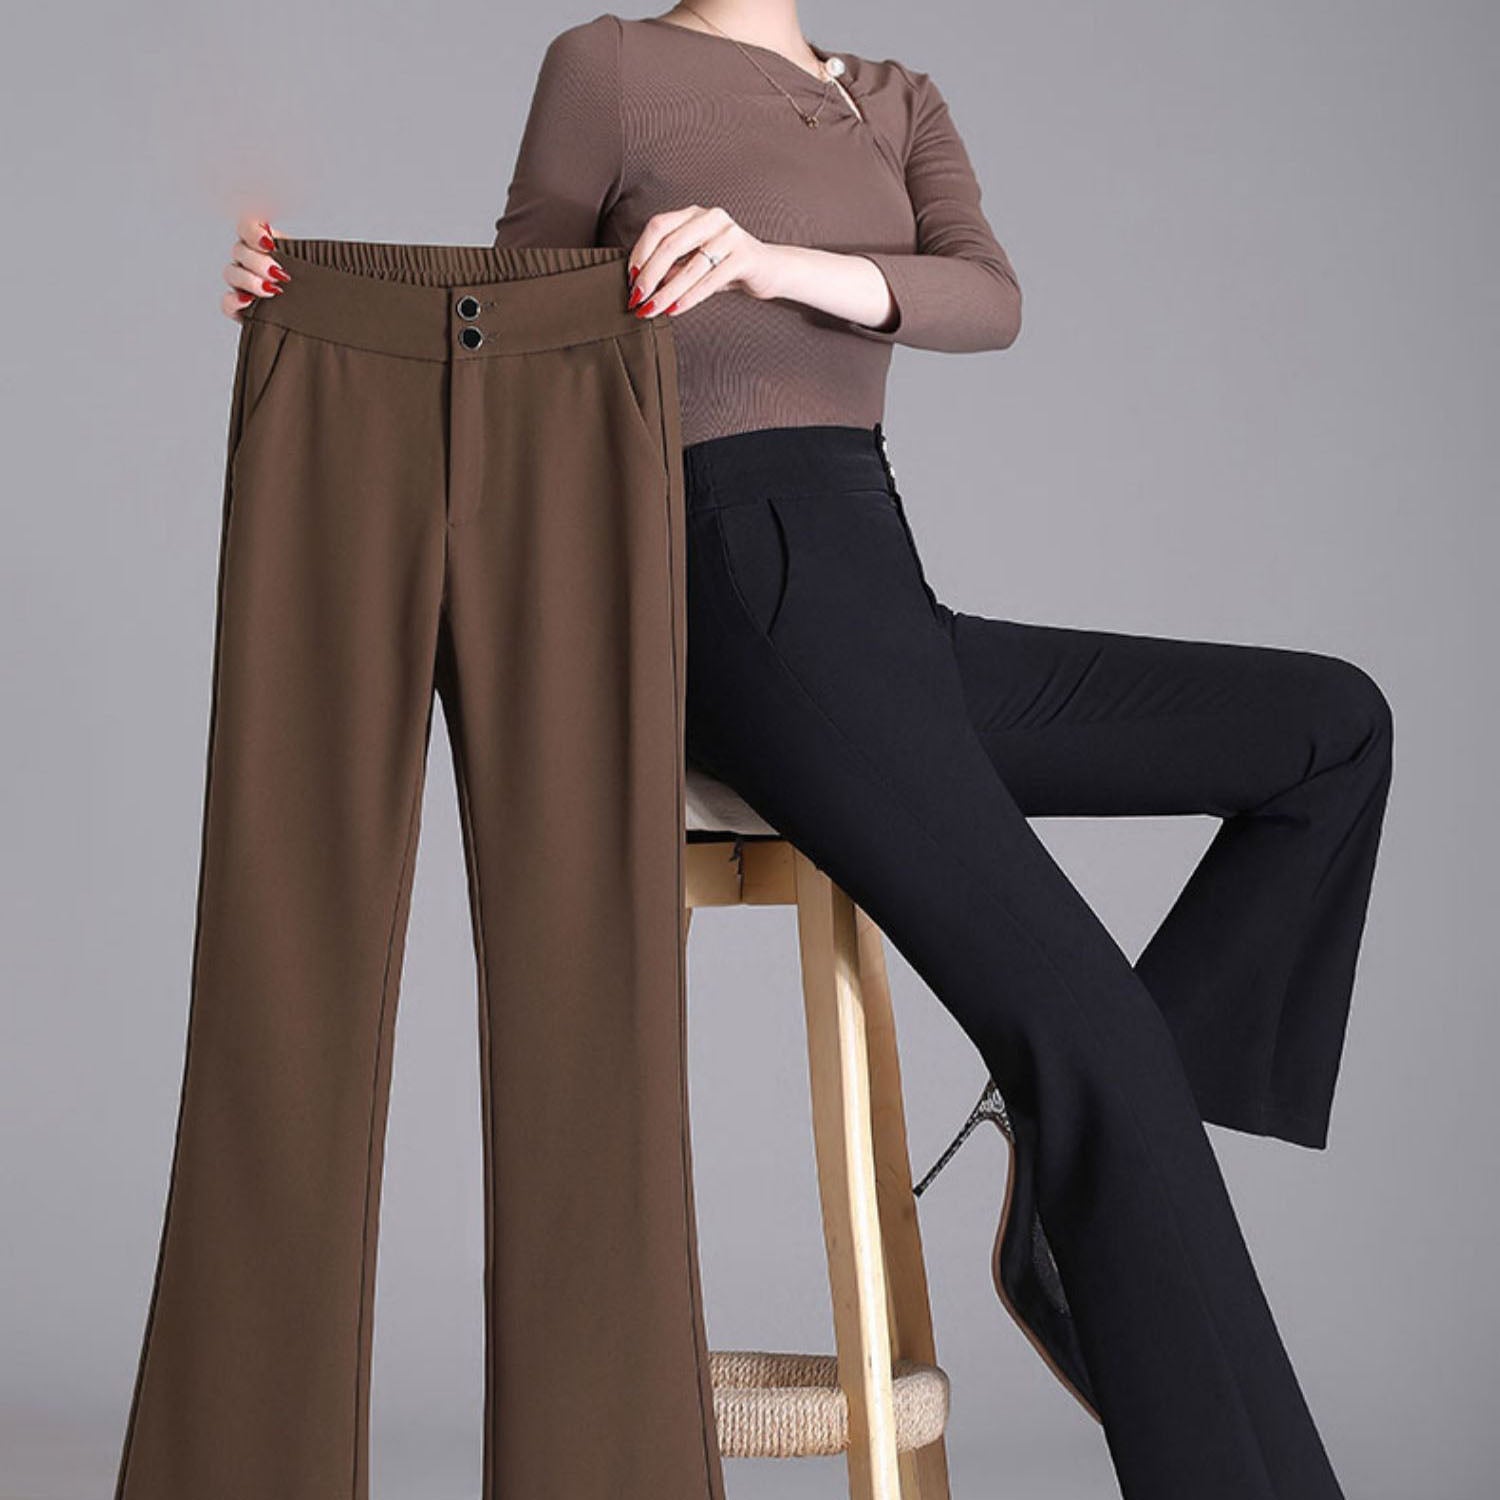 Pantalones acampanados elegantes de moda para mujer（50% DESCUENTO） – gabaray